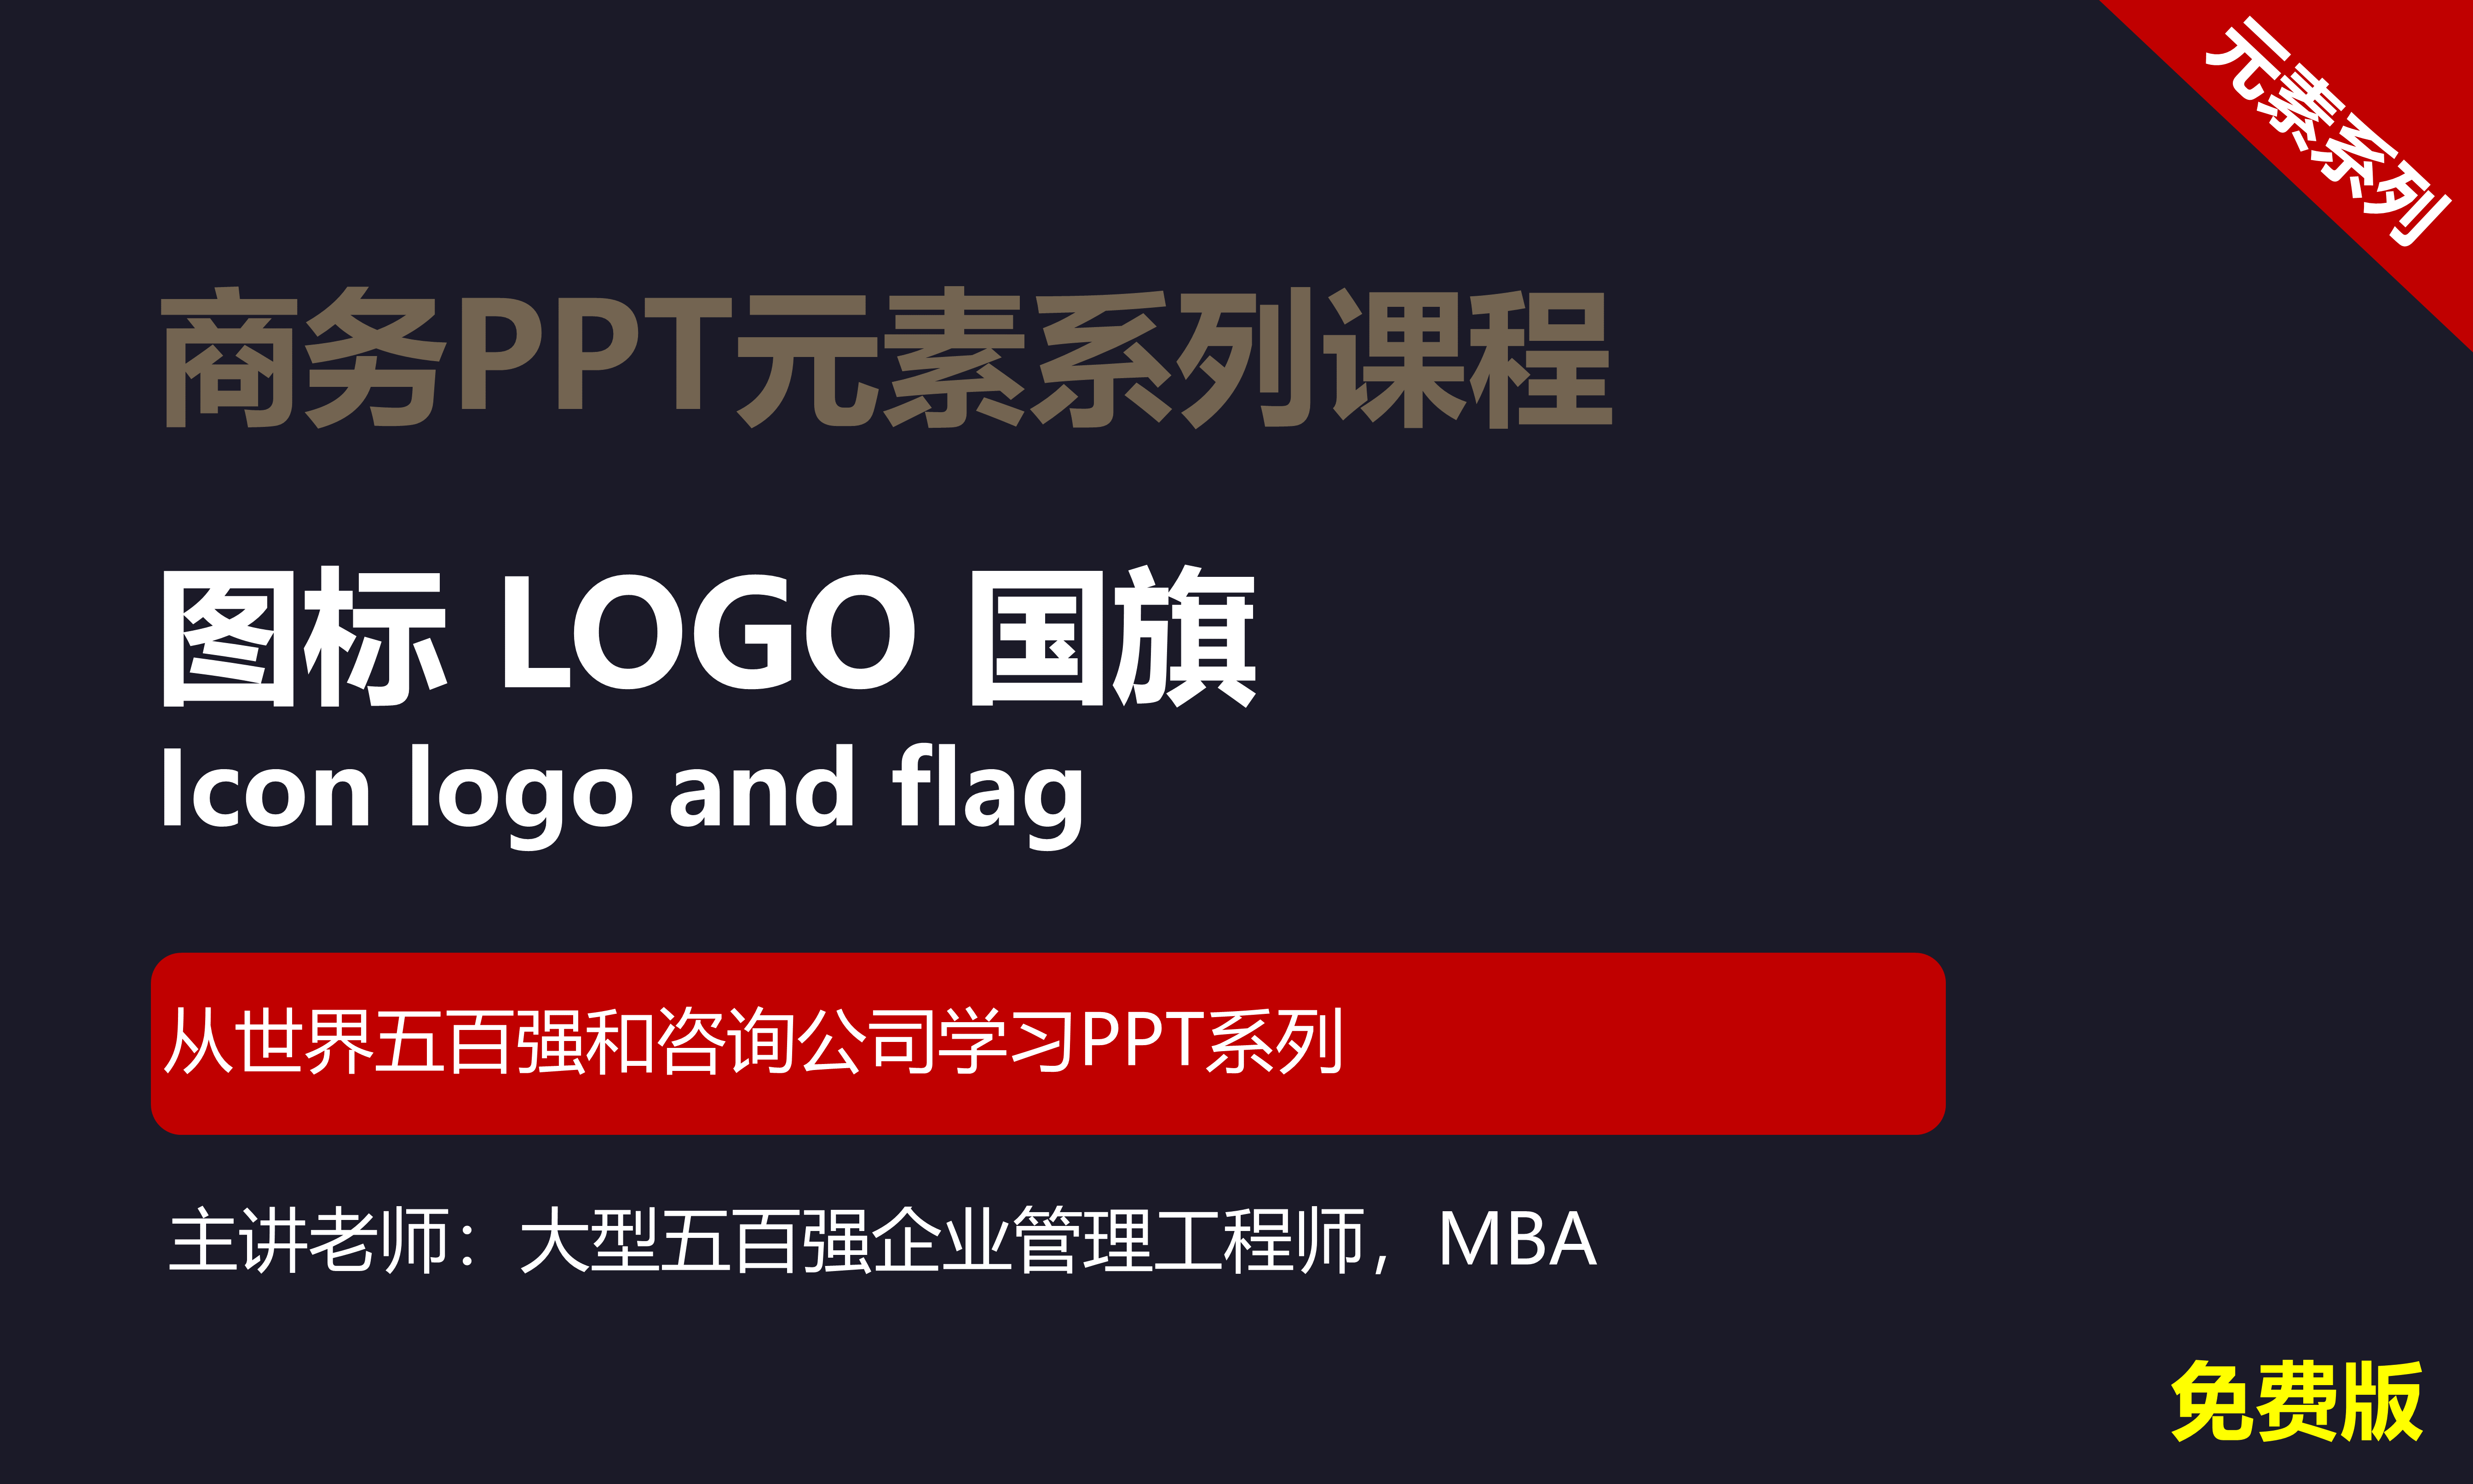 【司马懿】商务PPT设计进阶元素篇08【图标LOGO国旗】免费版